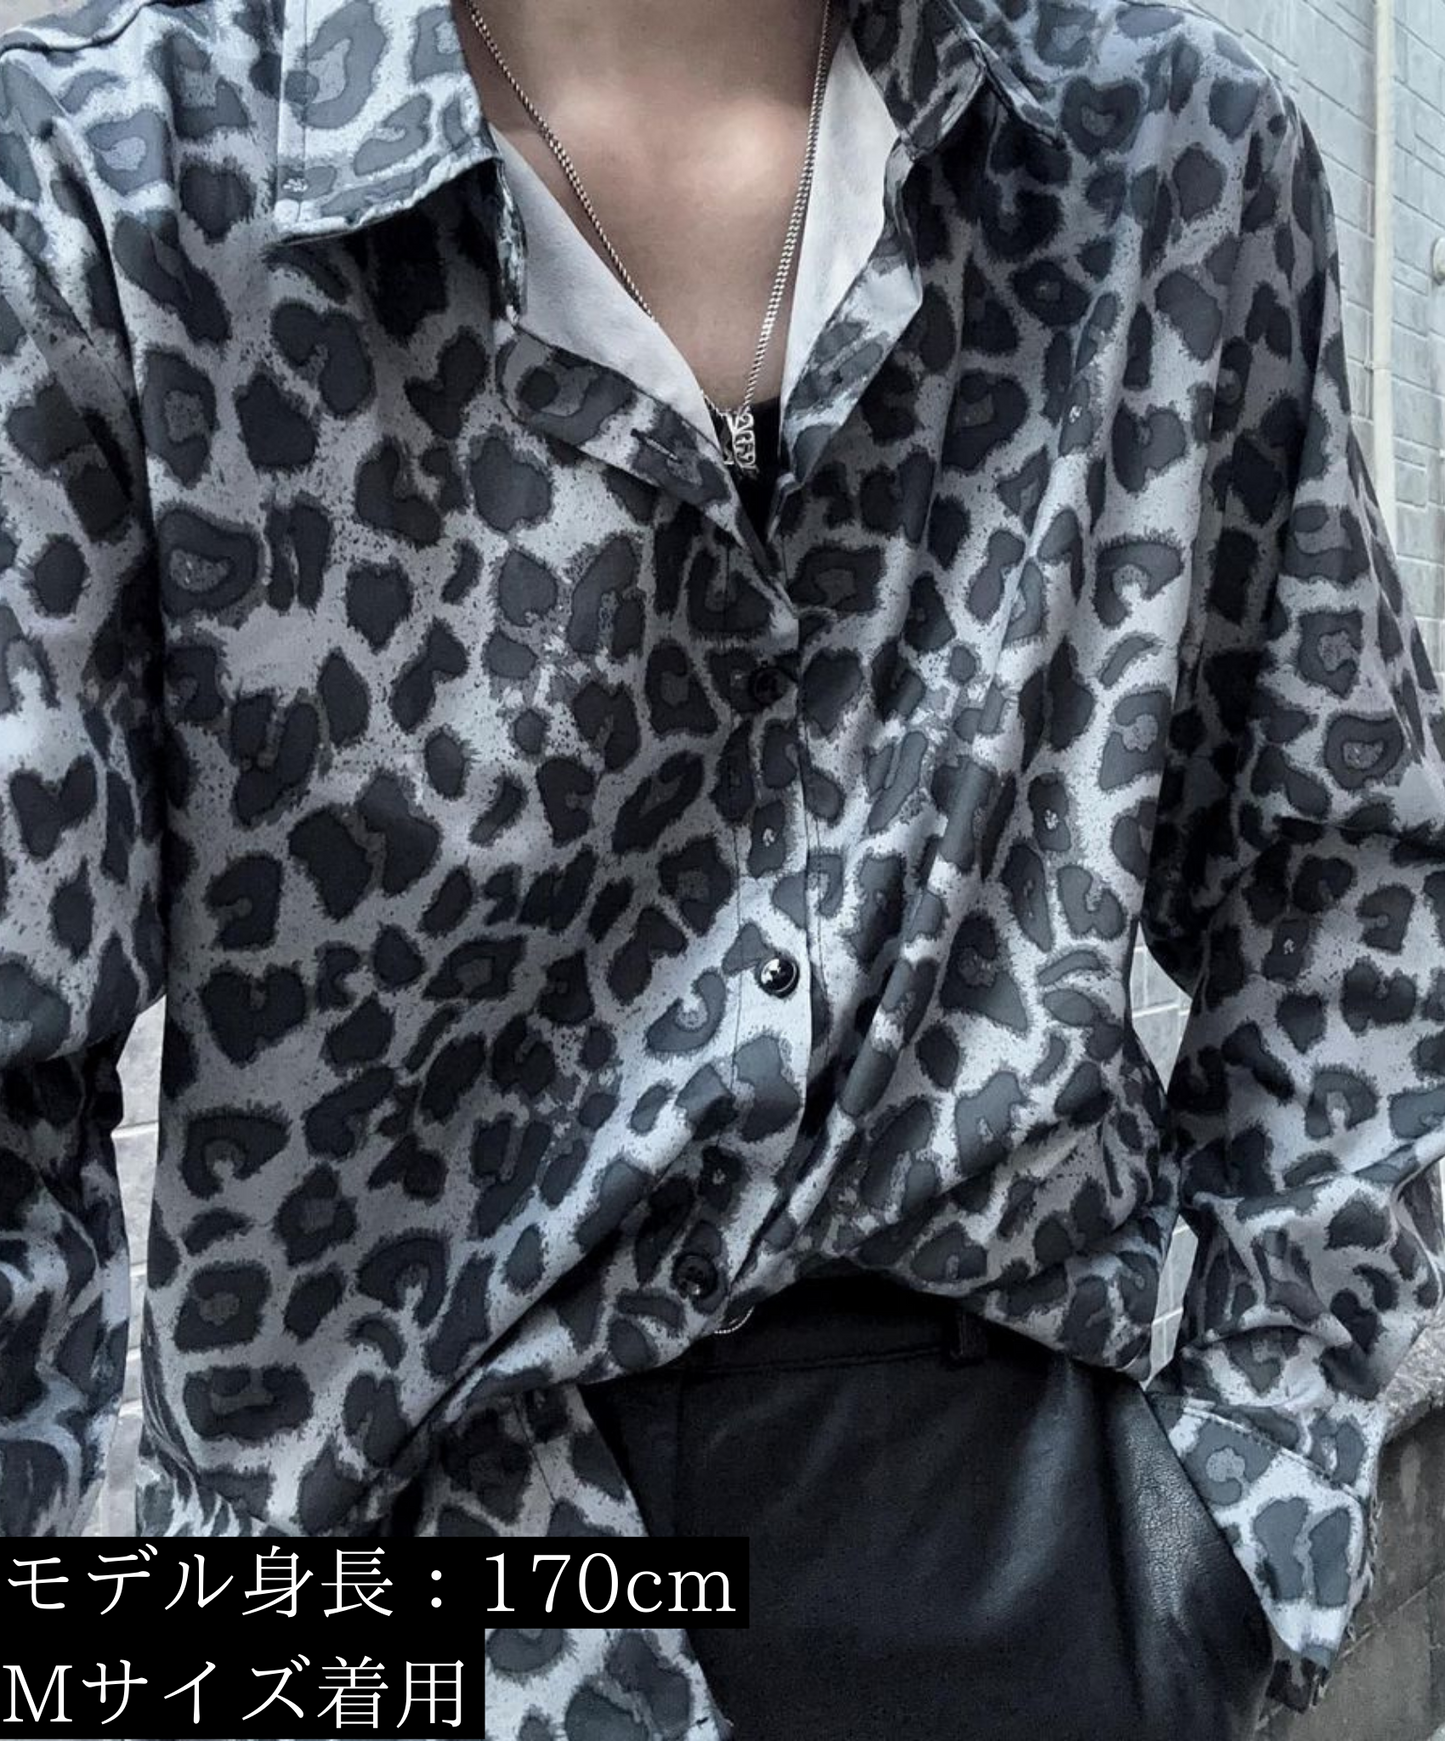 monotone leopard shirt EN934